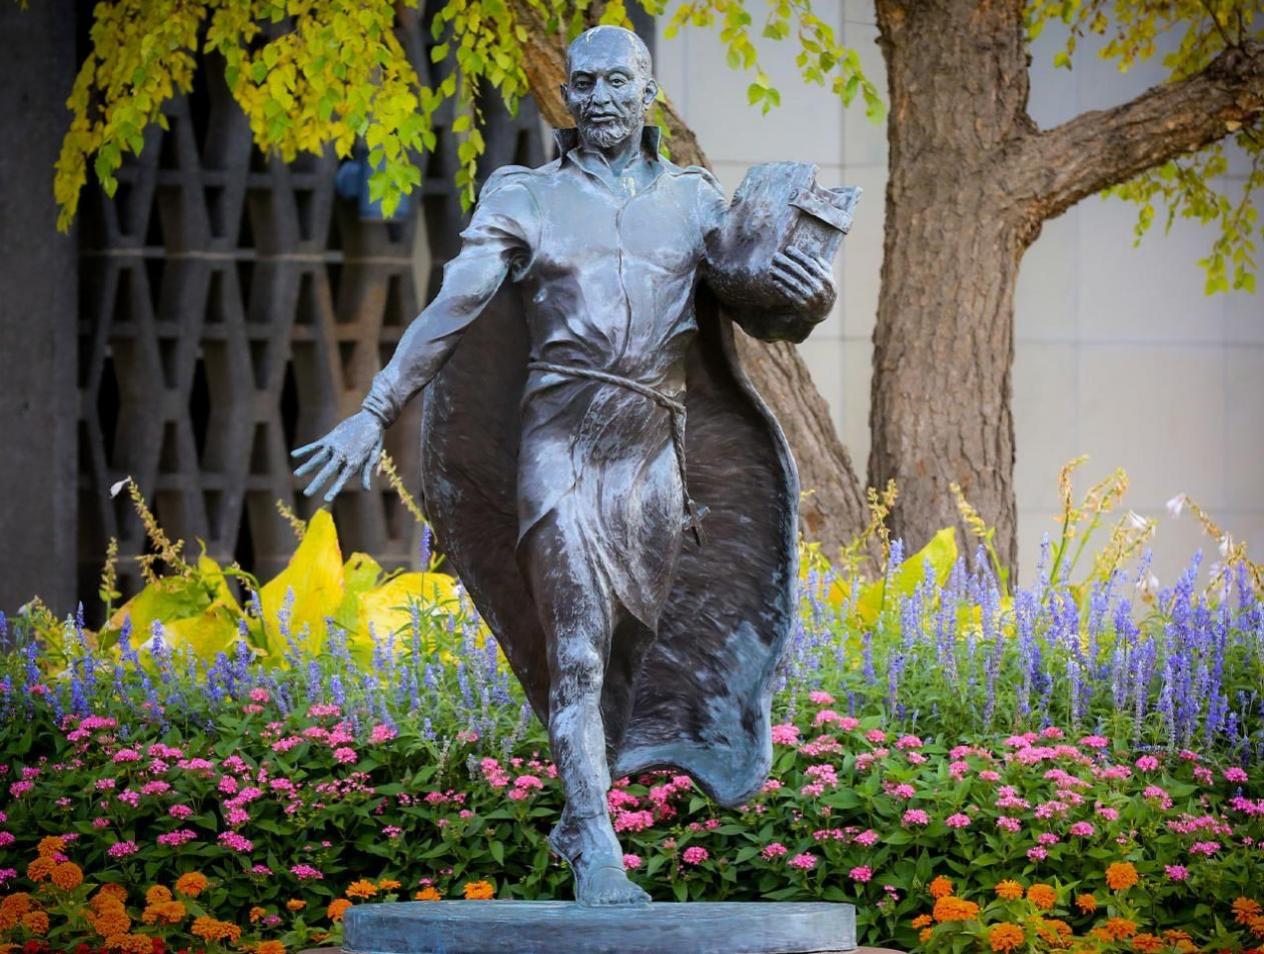 St. Ignatius statue on Creighton campus.